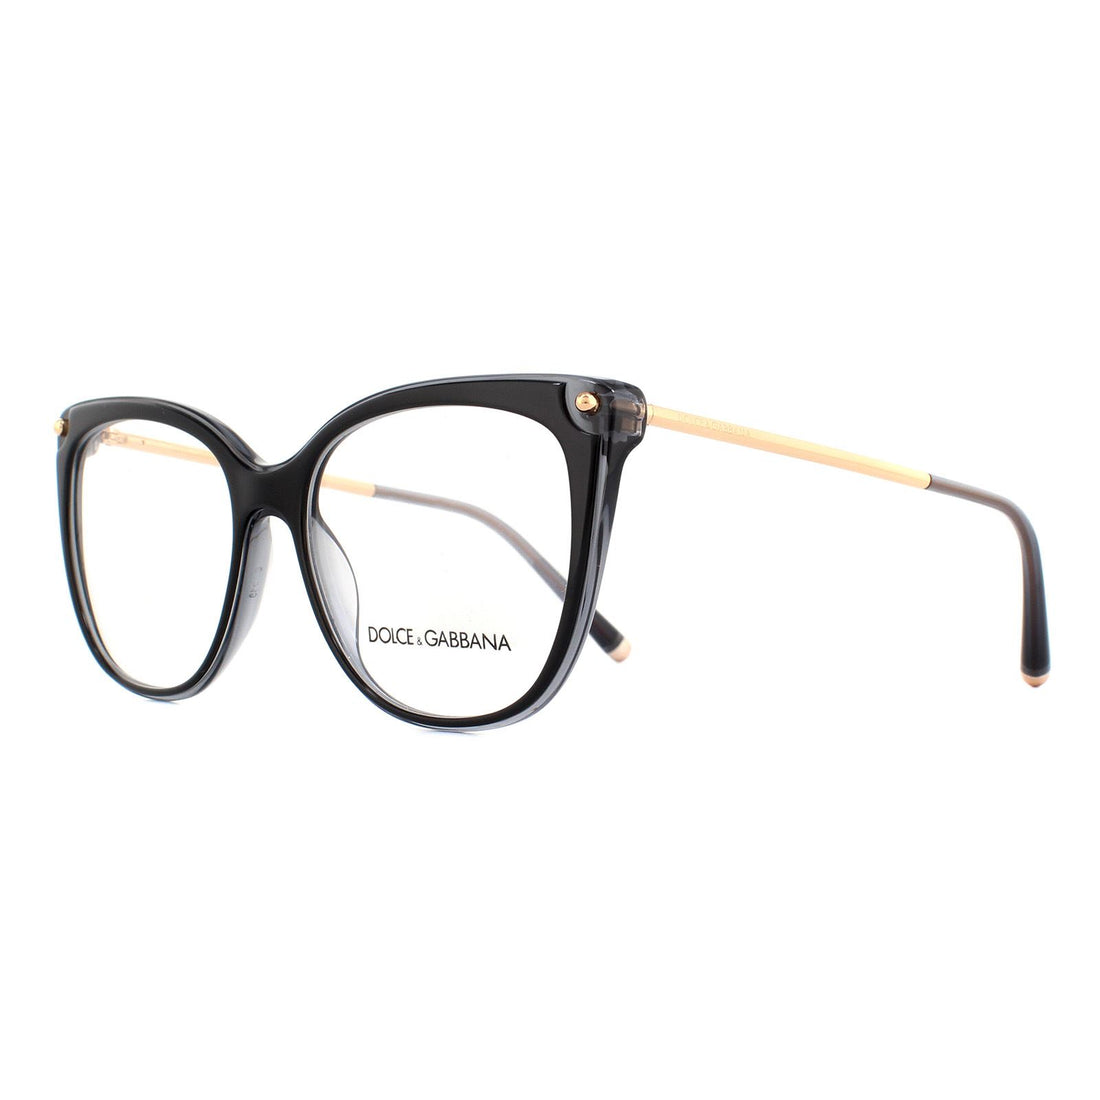 Dolce & Gabbana DG3294 Glasses Frames